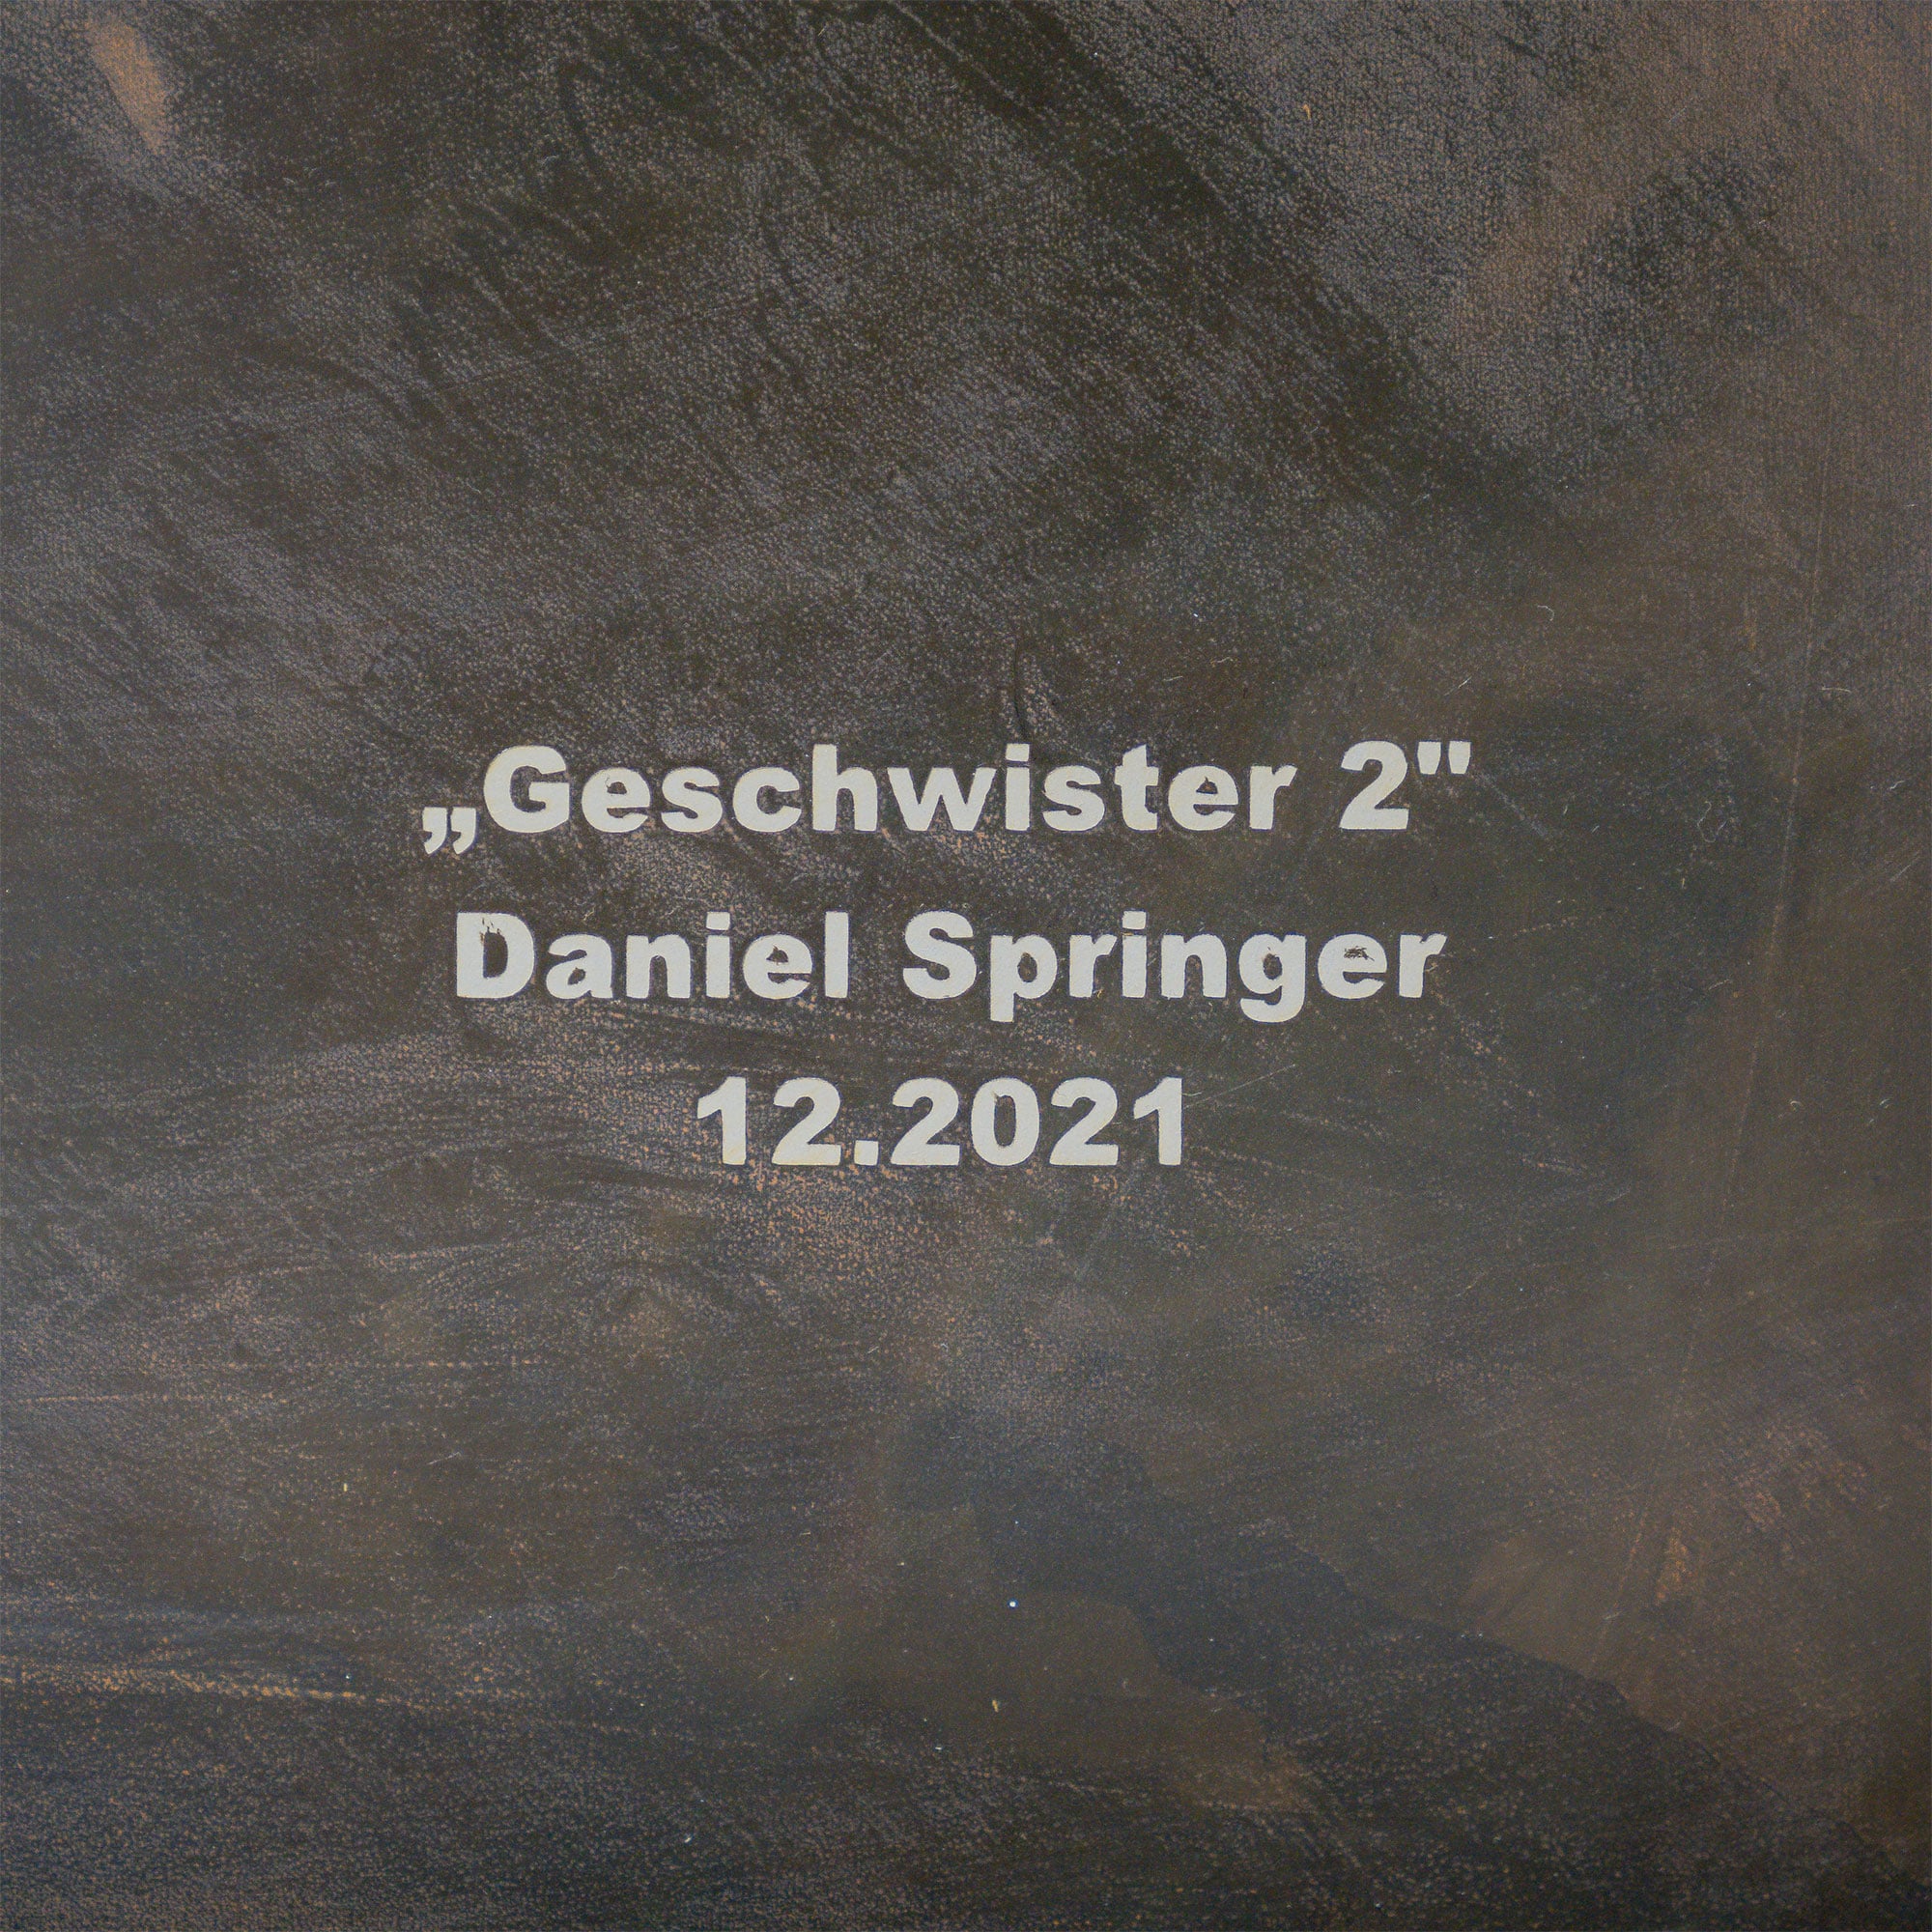 Stahlbild mit dem Namen "Geschwister" aus der Reihe Edelstahl von Daniel Springer.